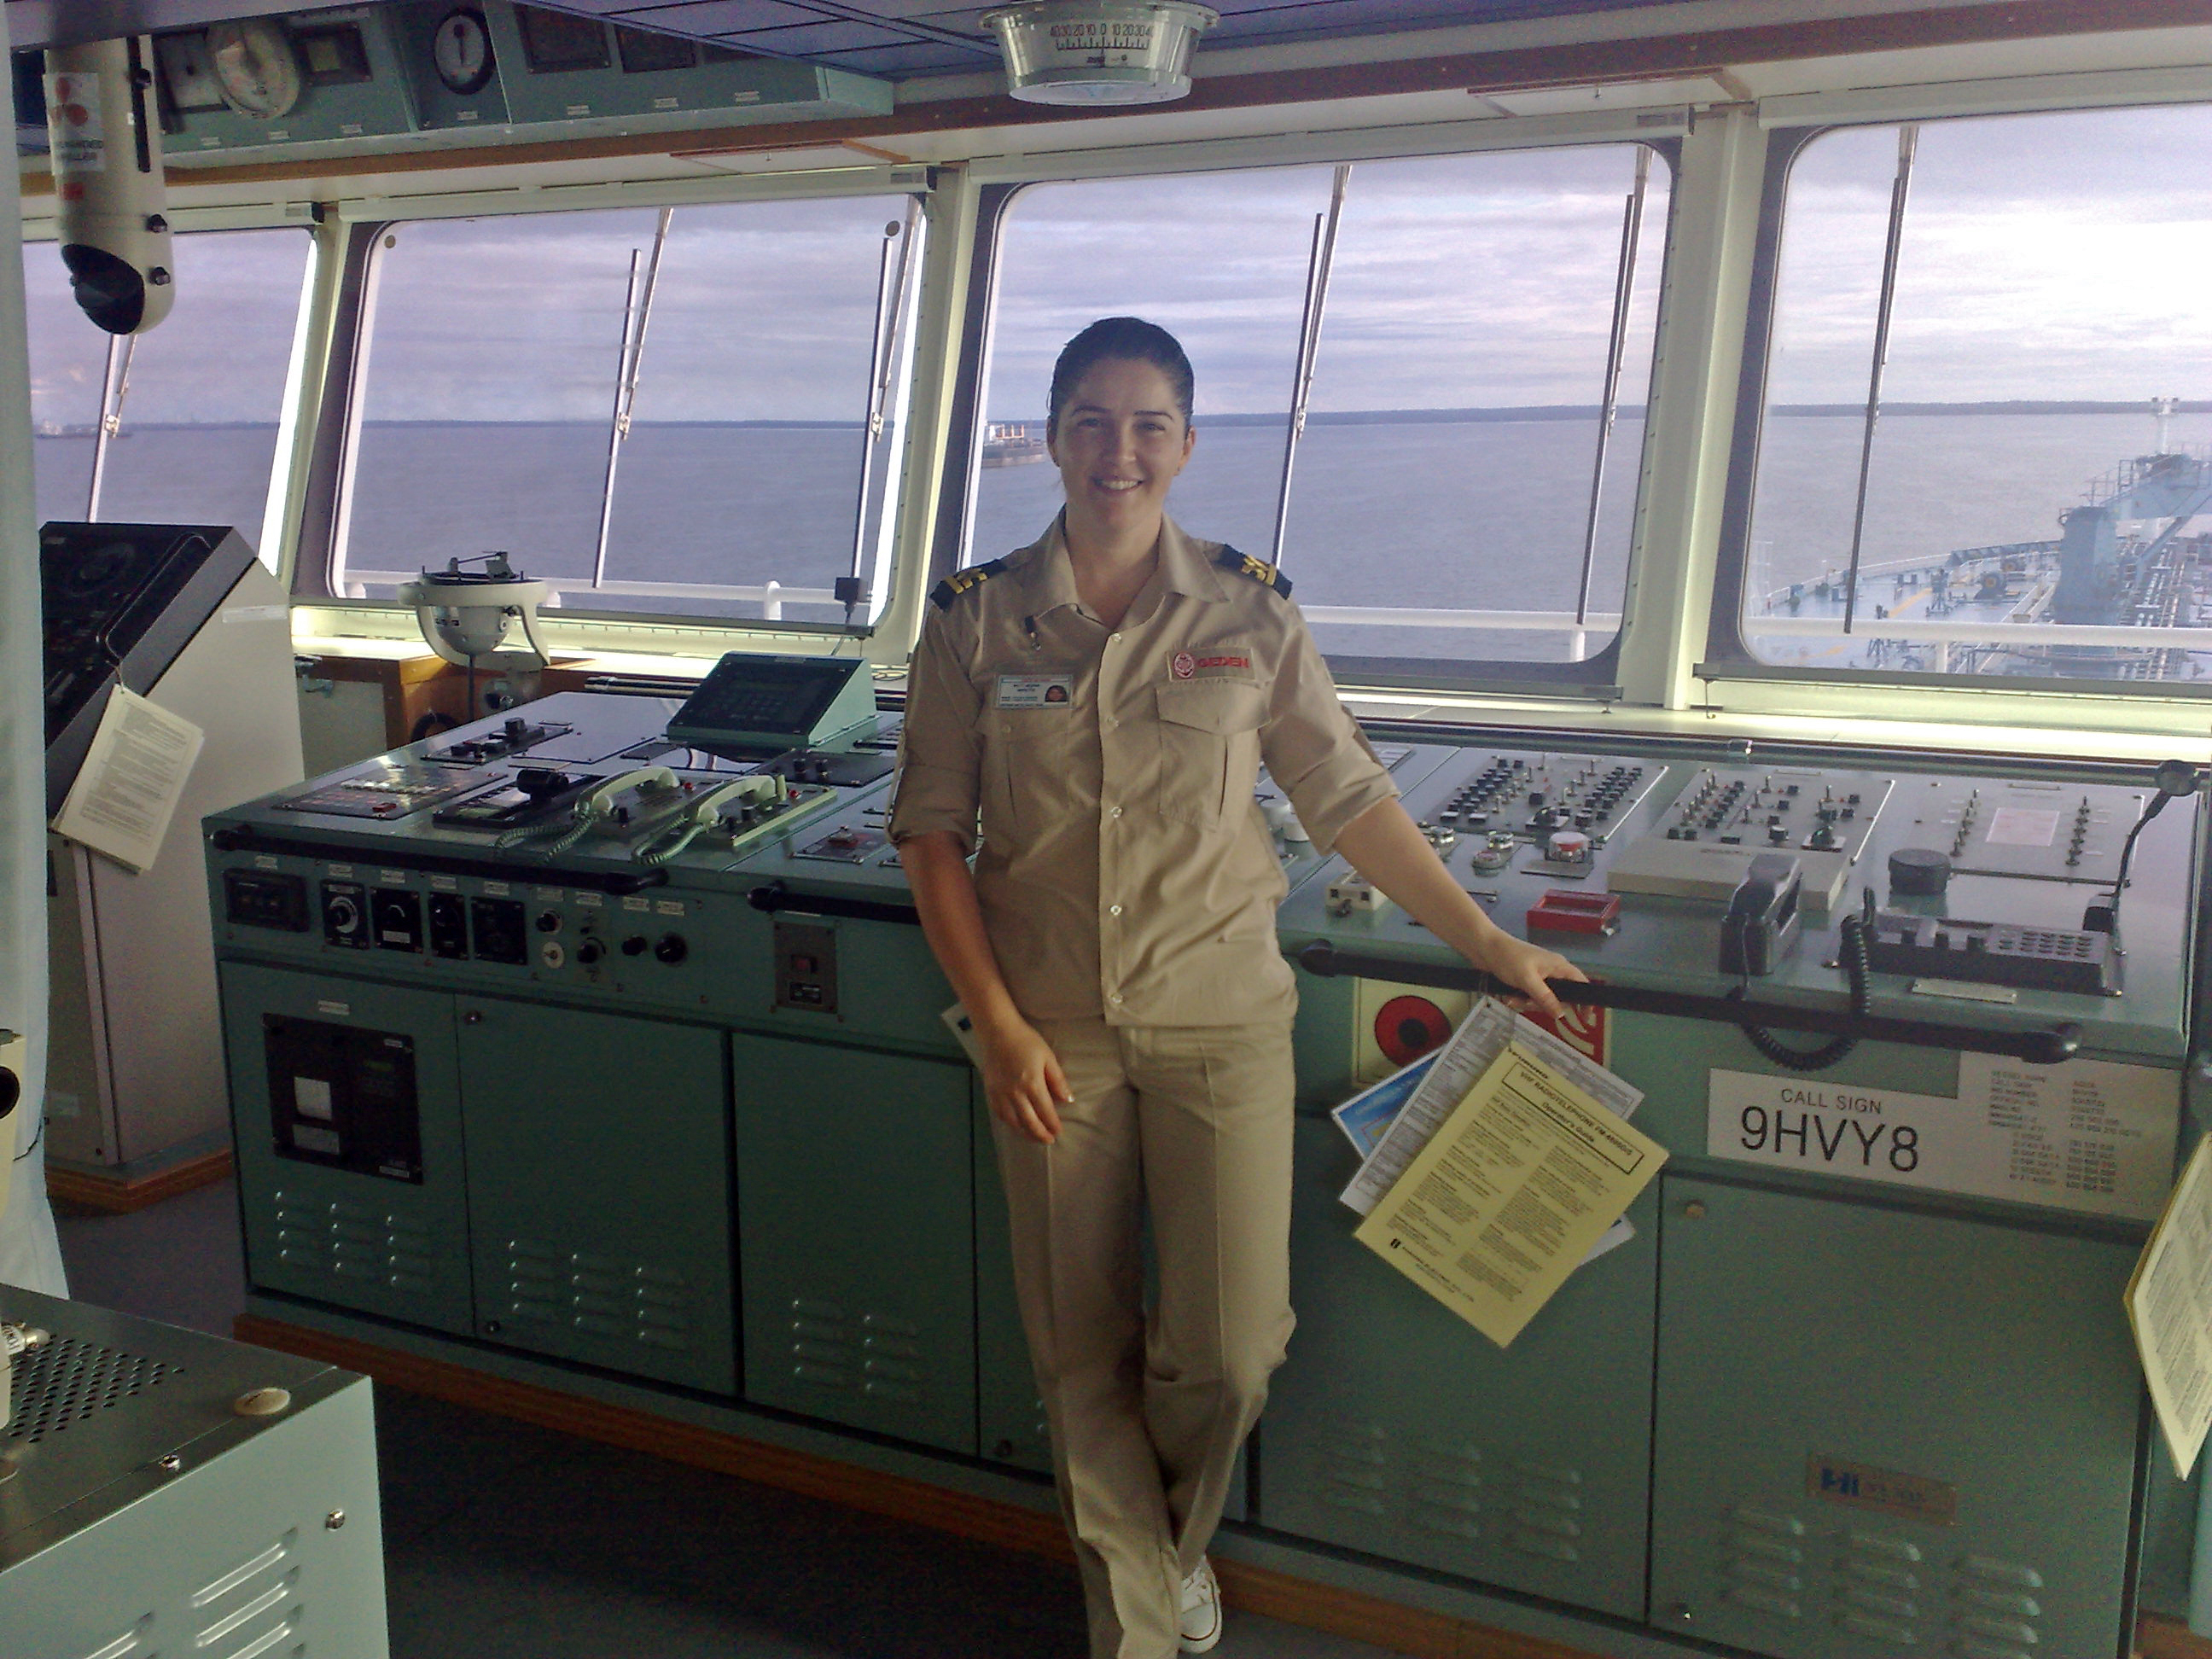 Aylin Coskun, Chefe de Operações de Frete Supramax na COFCO International. Uma das primeiras capitãs de navios cargueiros da Turquia.